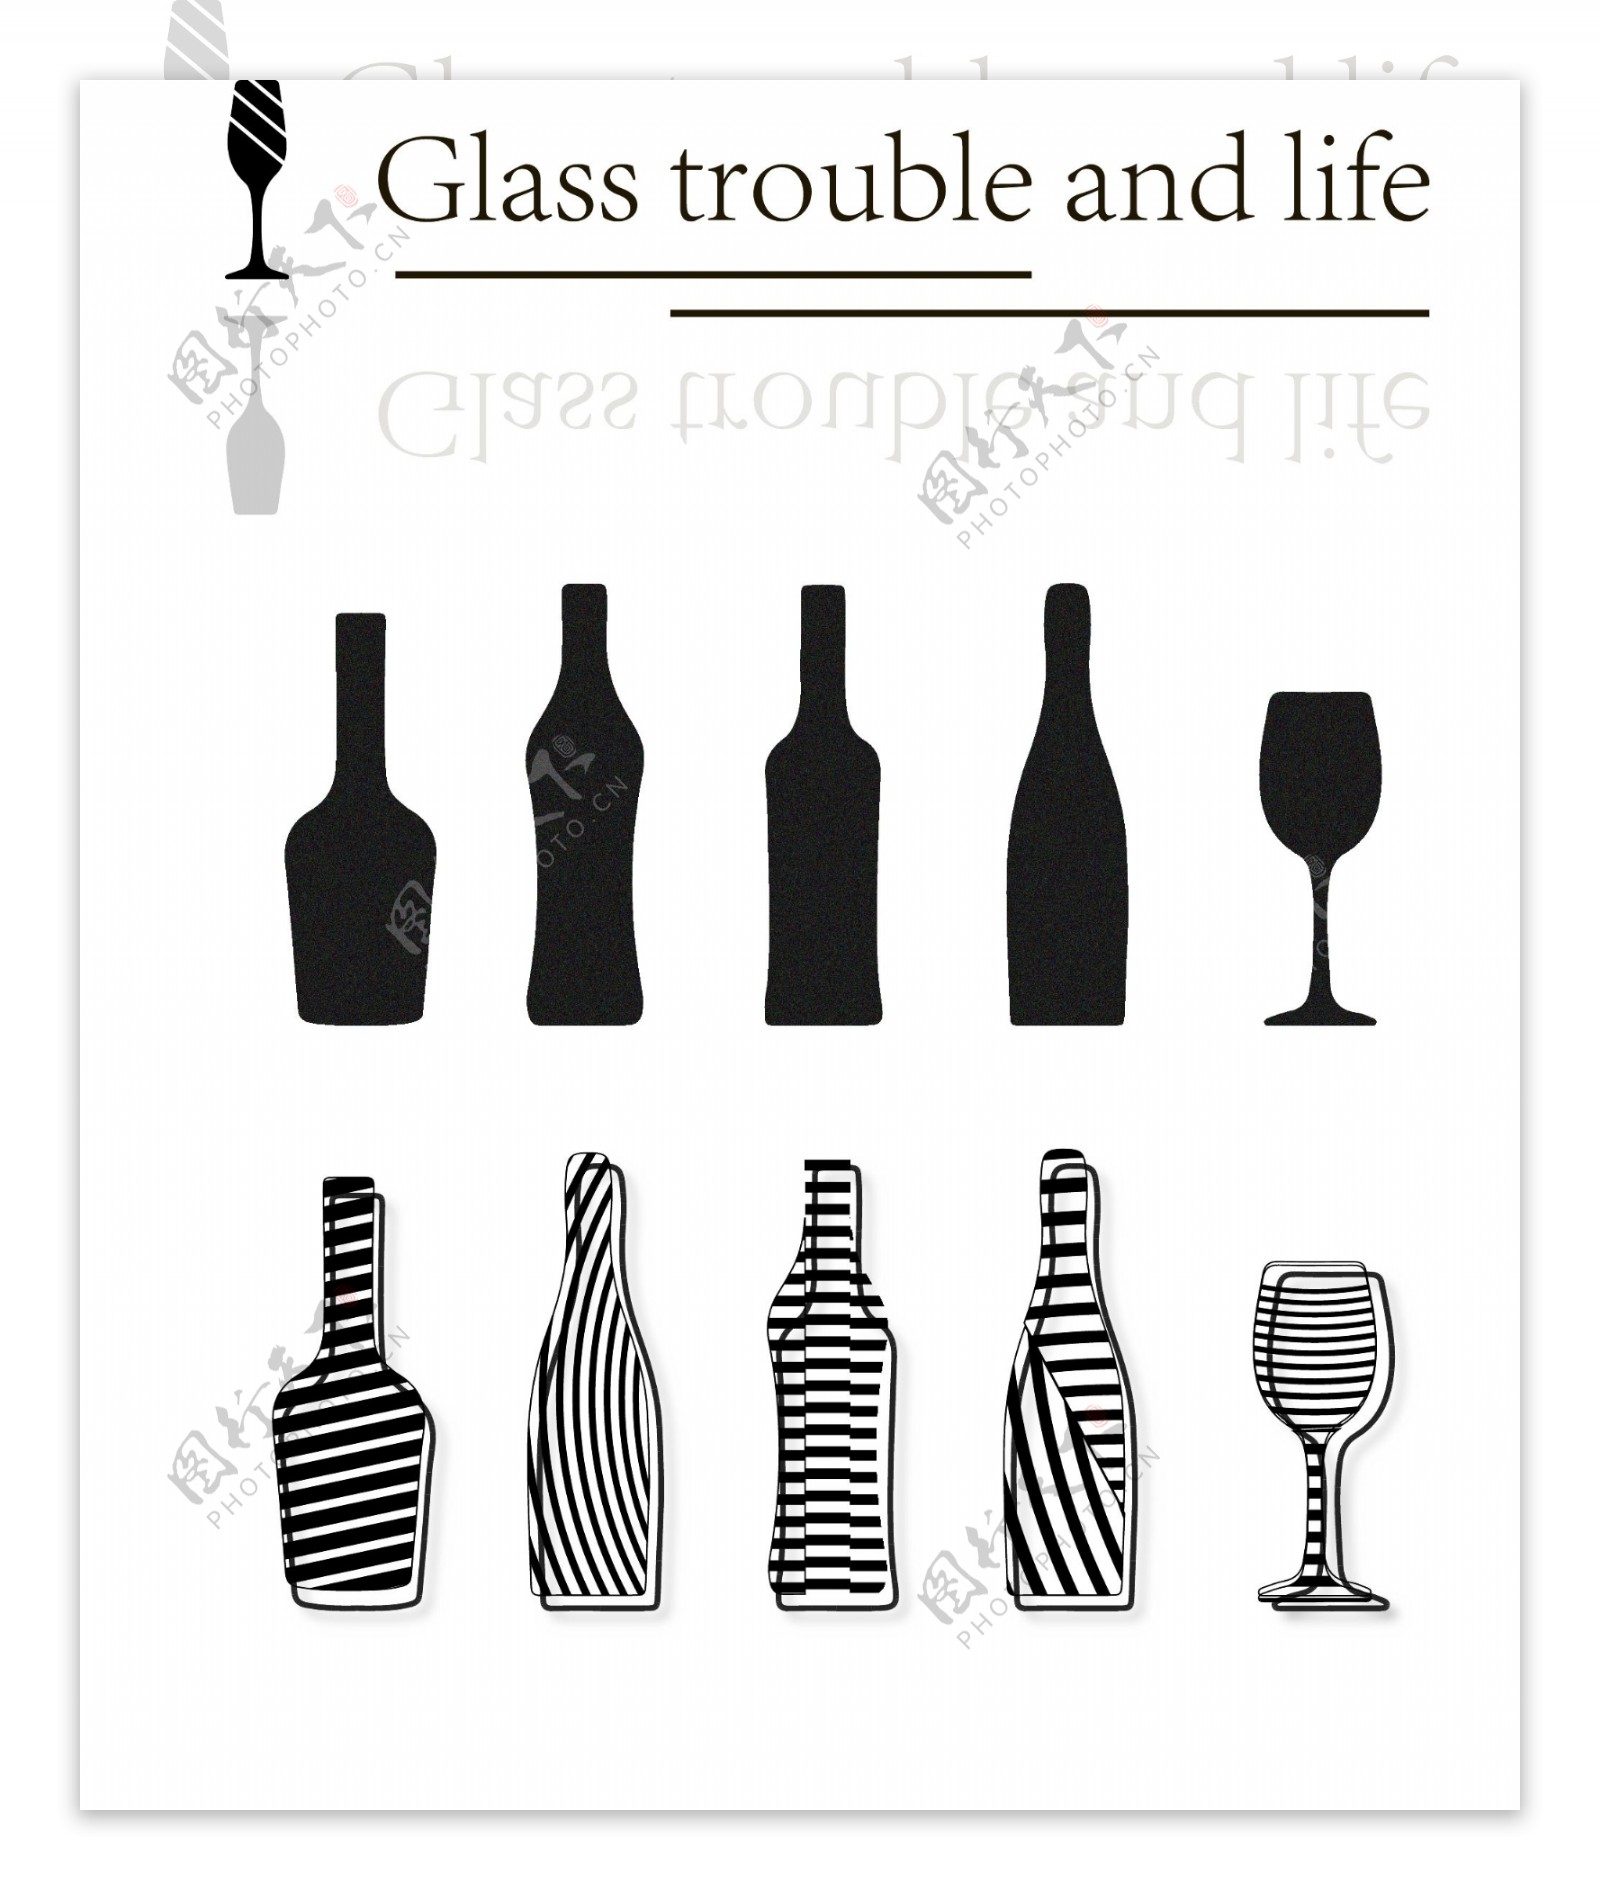 酒瓶酒杯线条组成装饰图案集合